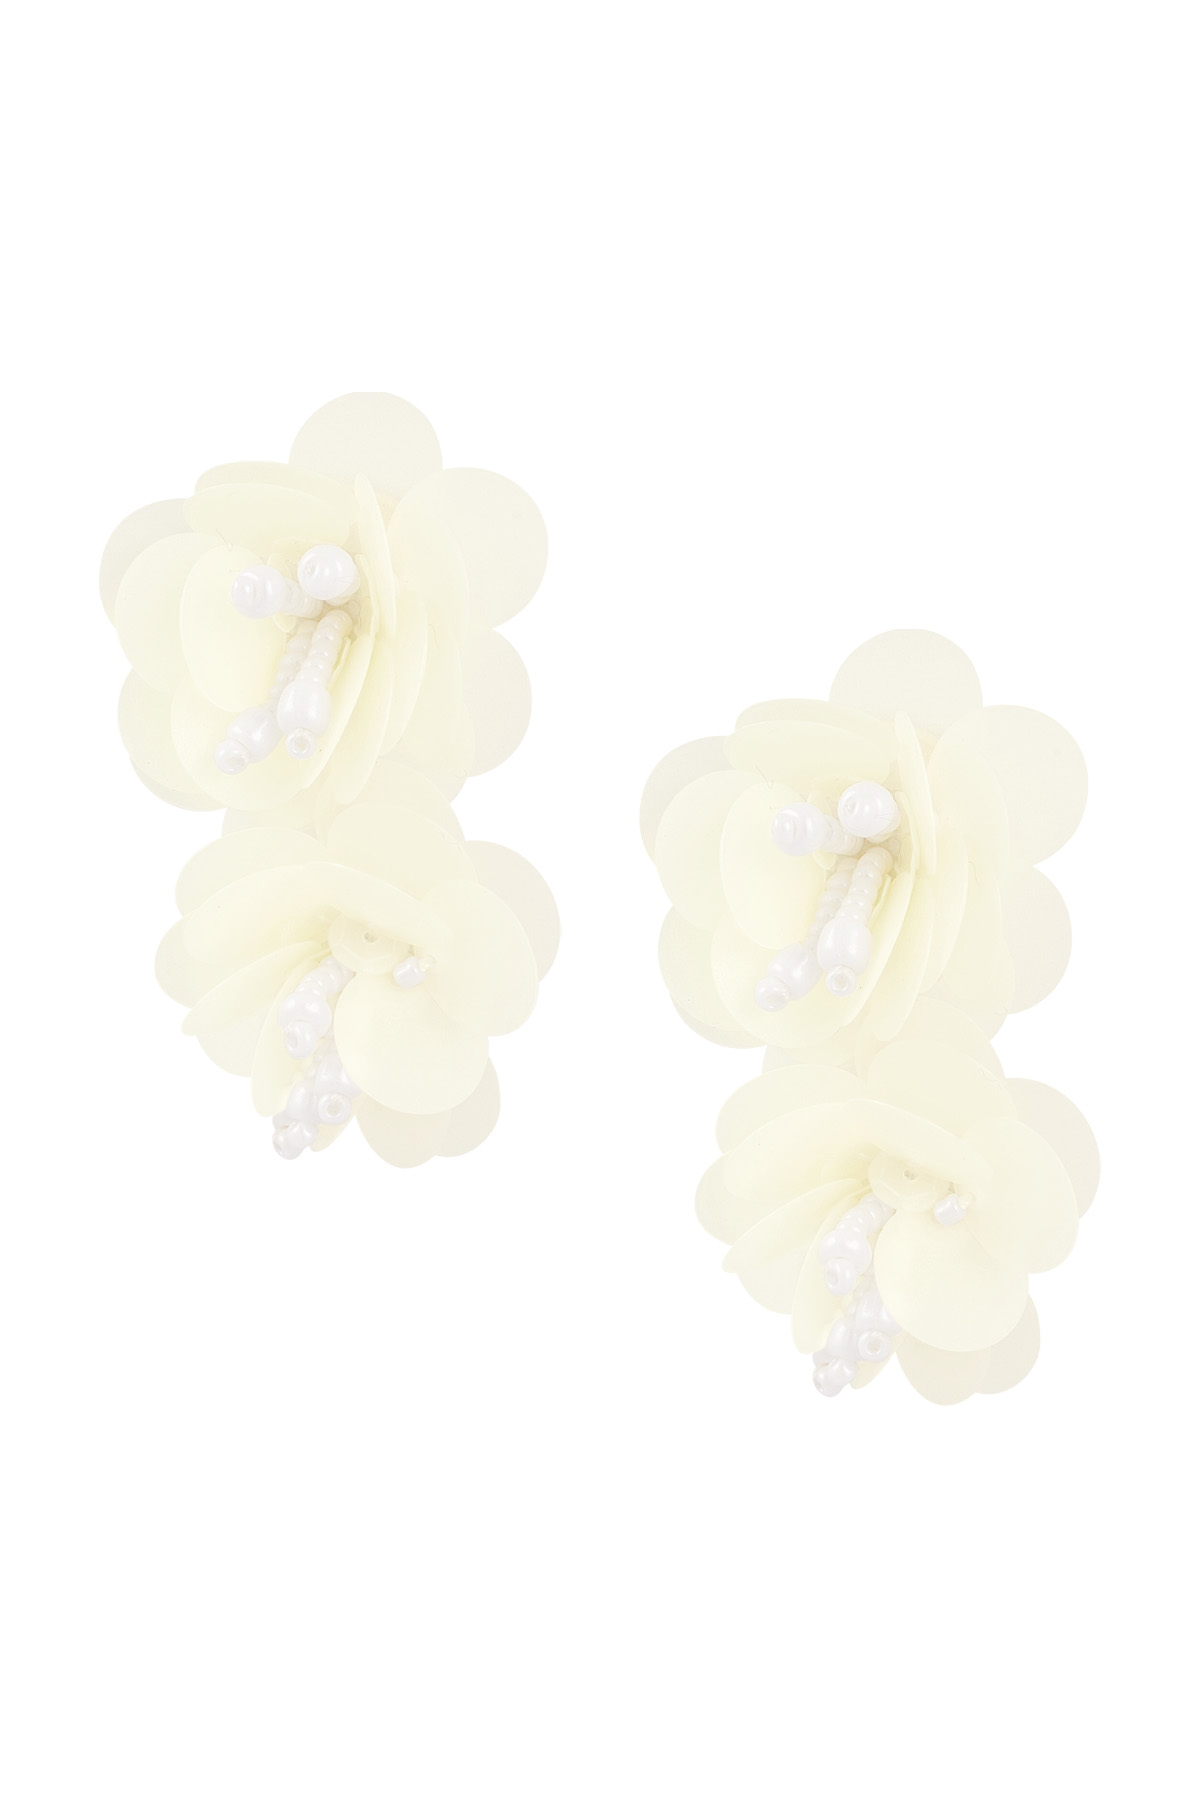 Rose spirit earrings - off-white h5 